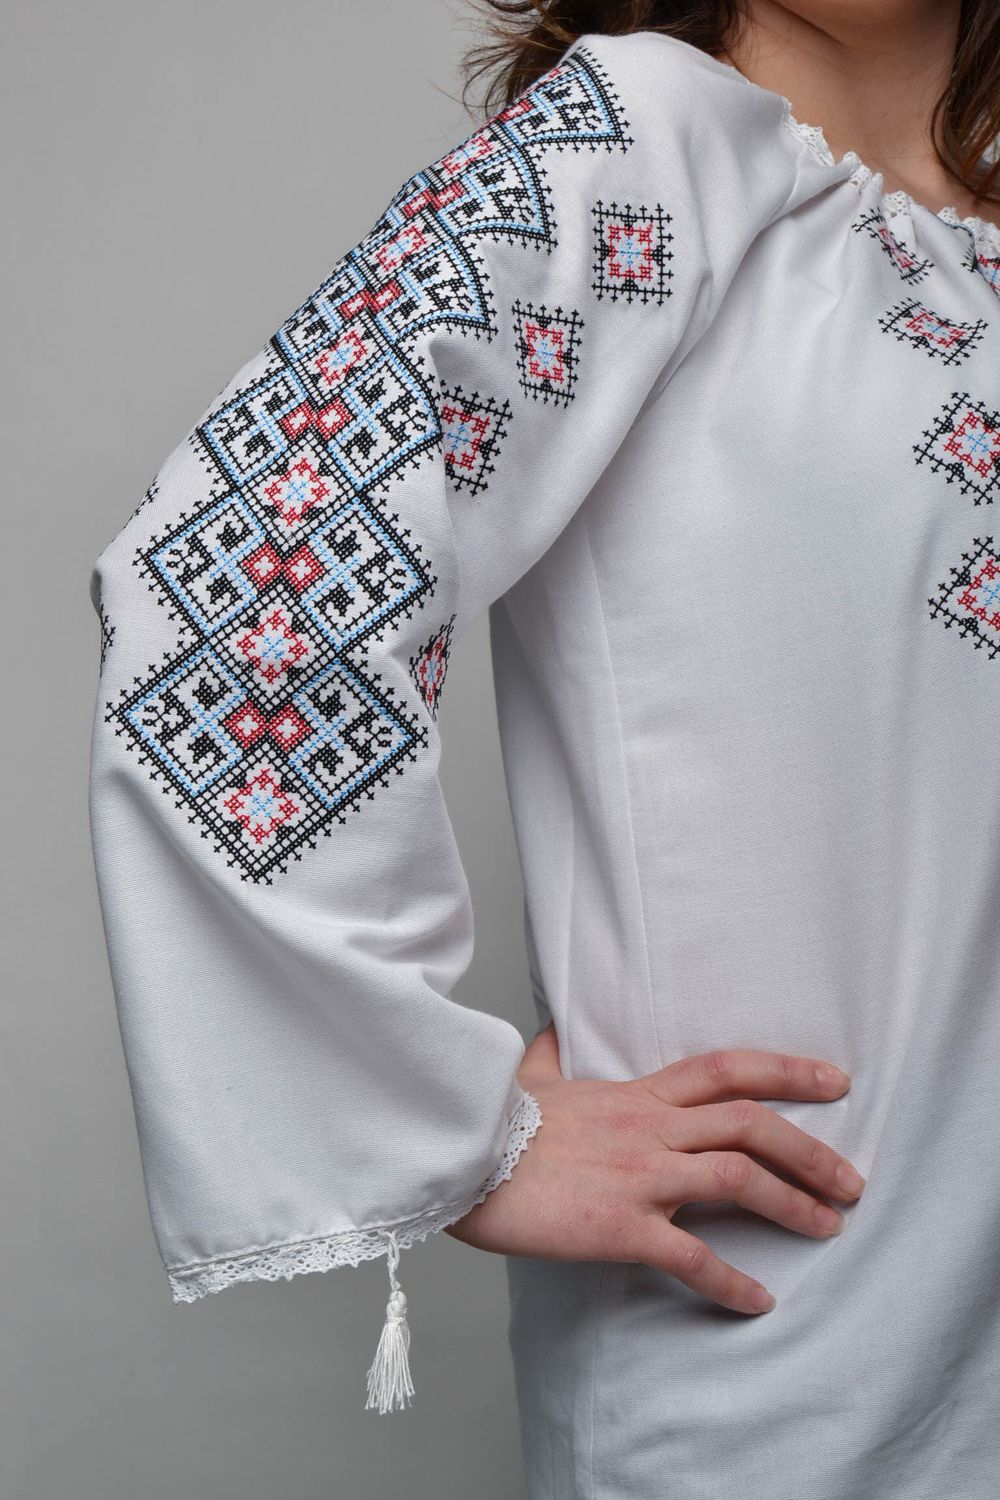 Women's cross stitched shirt photo 2